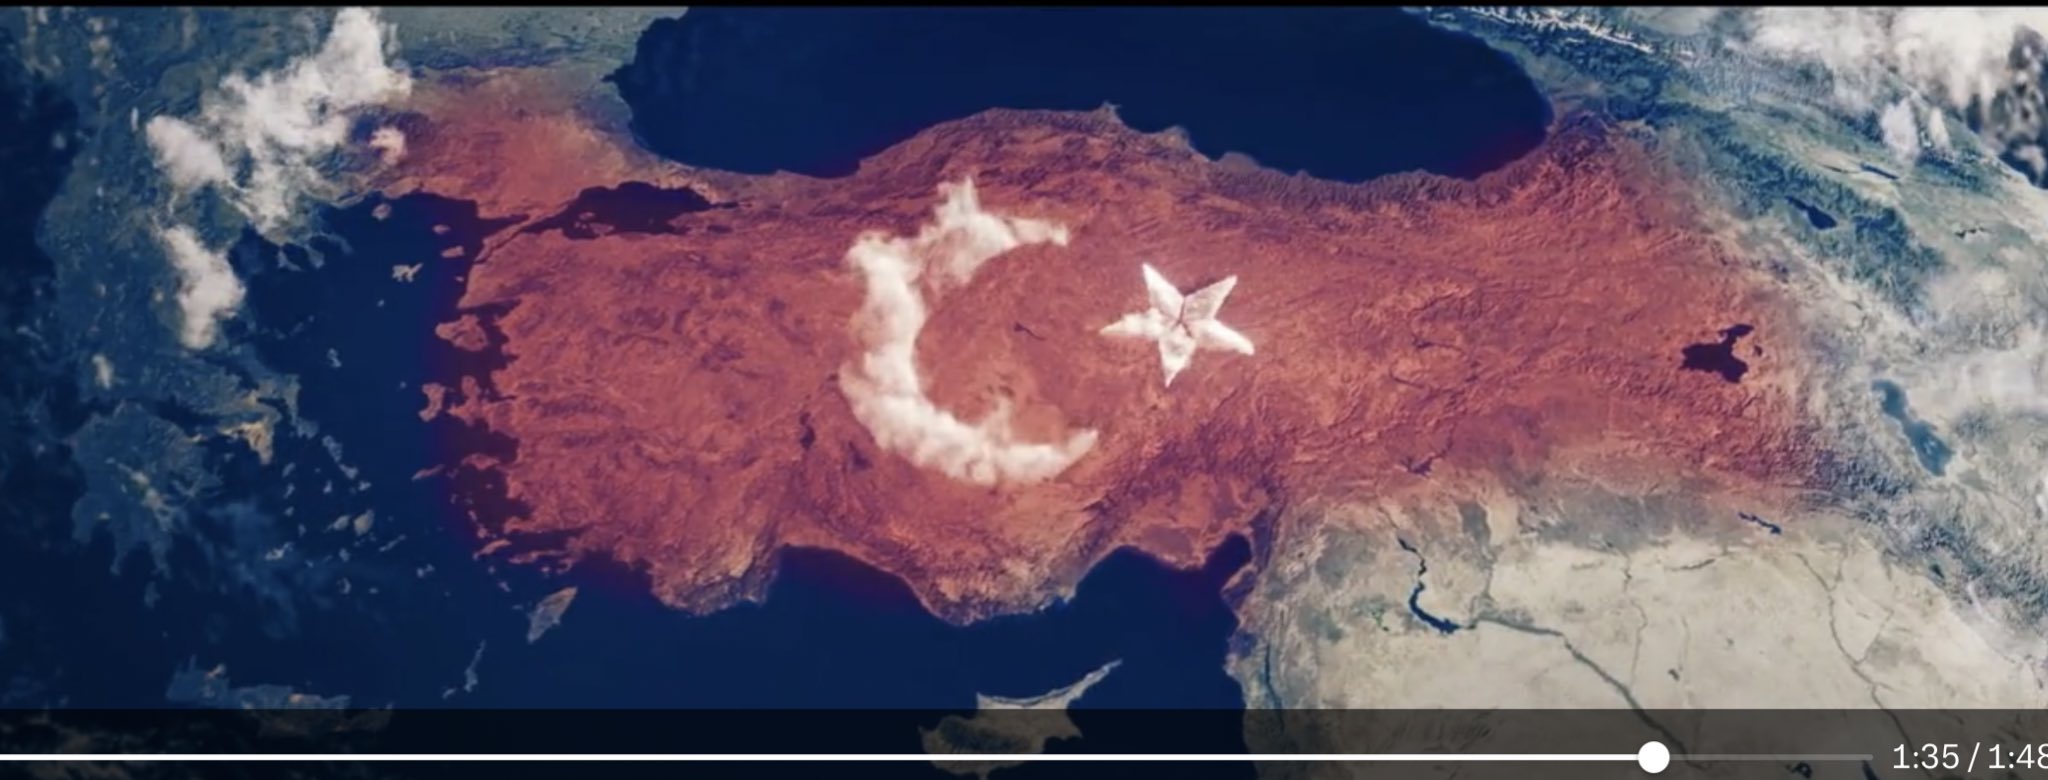 Ο Τσαβούσογλου μας ανακοίνωσε «συνομιλίες» μετά από τις εκλογές με χάρτη που δείχνει νησιά του Αιγαίου να είναι τουρκικά!